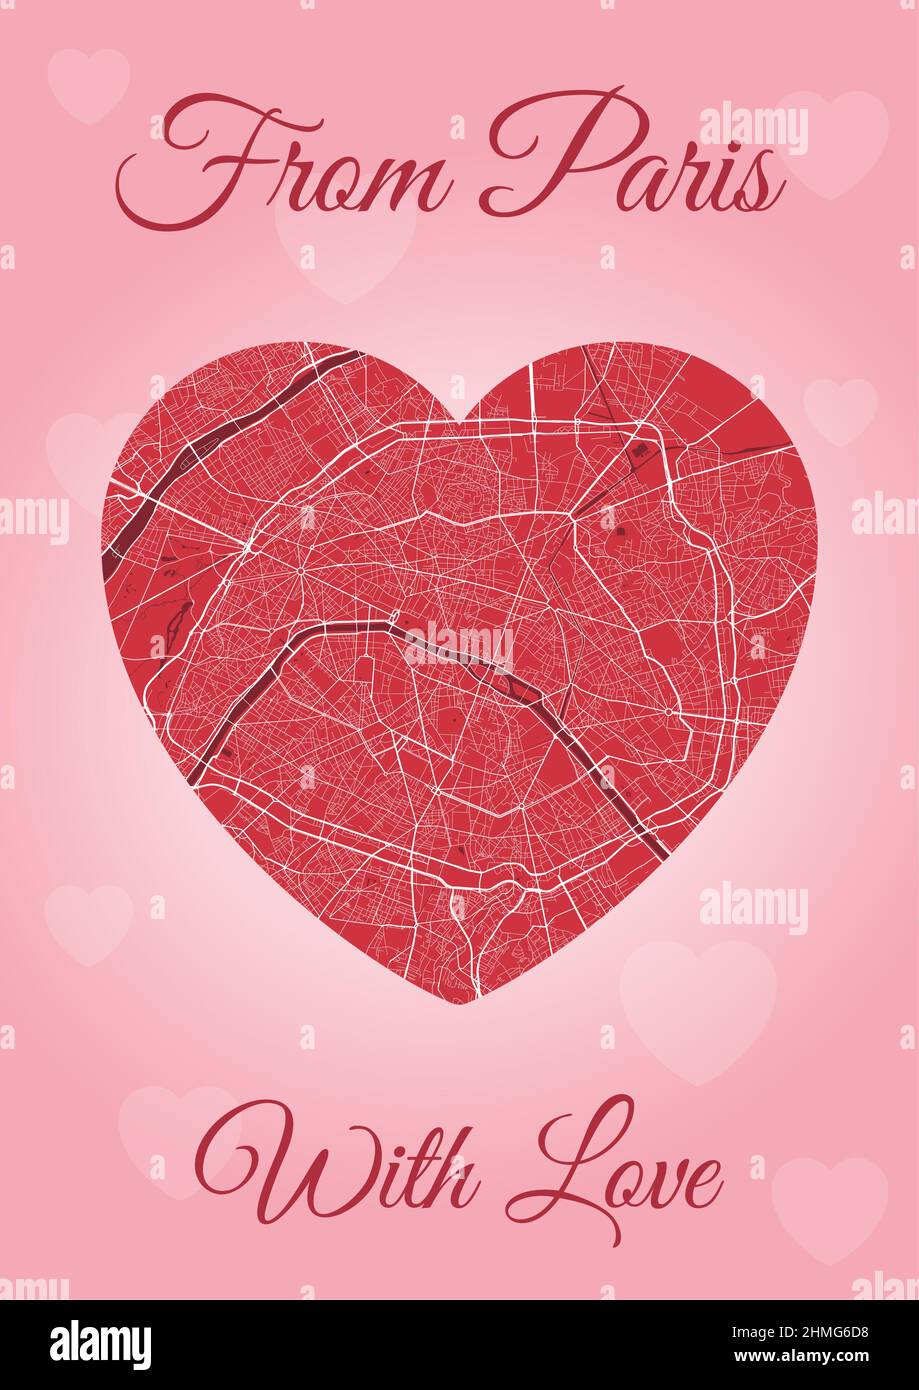 Von Paris mit Liebeskarte, Stadtplan in Herzform. Vertikale A4 Rosa und rote Farbvektordarstellung. Ich liebe City travel City Scape. Stock Vektor